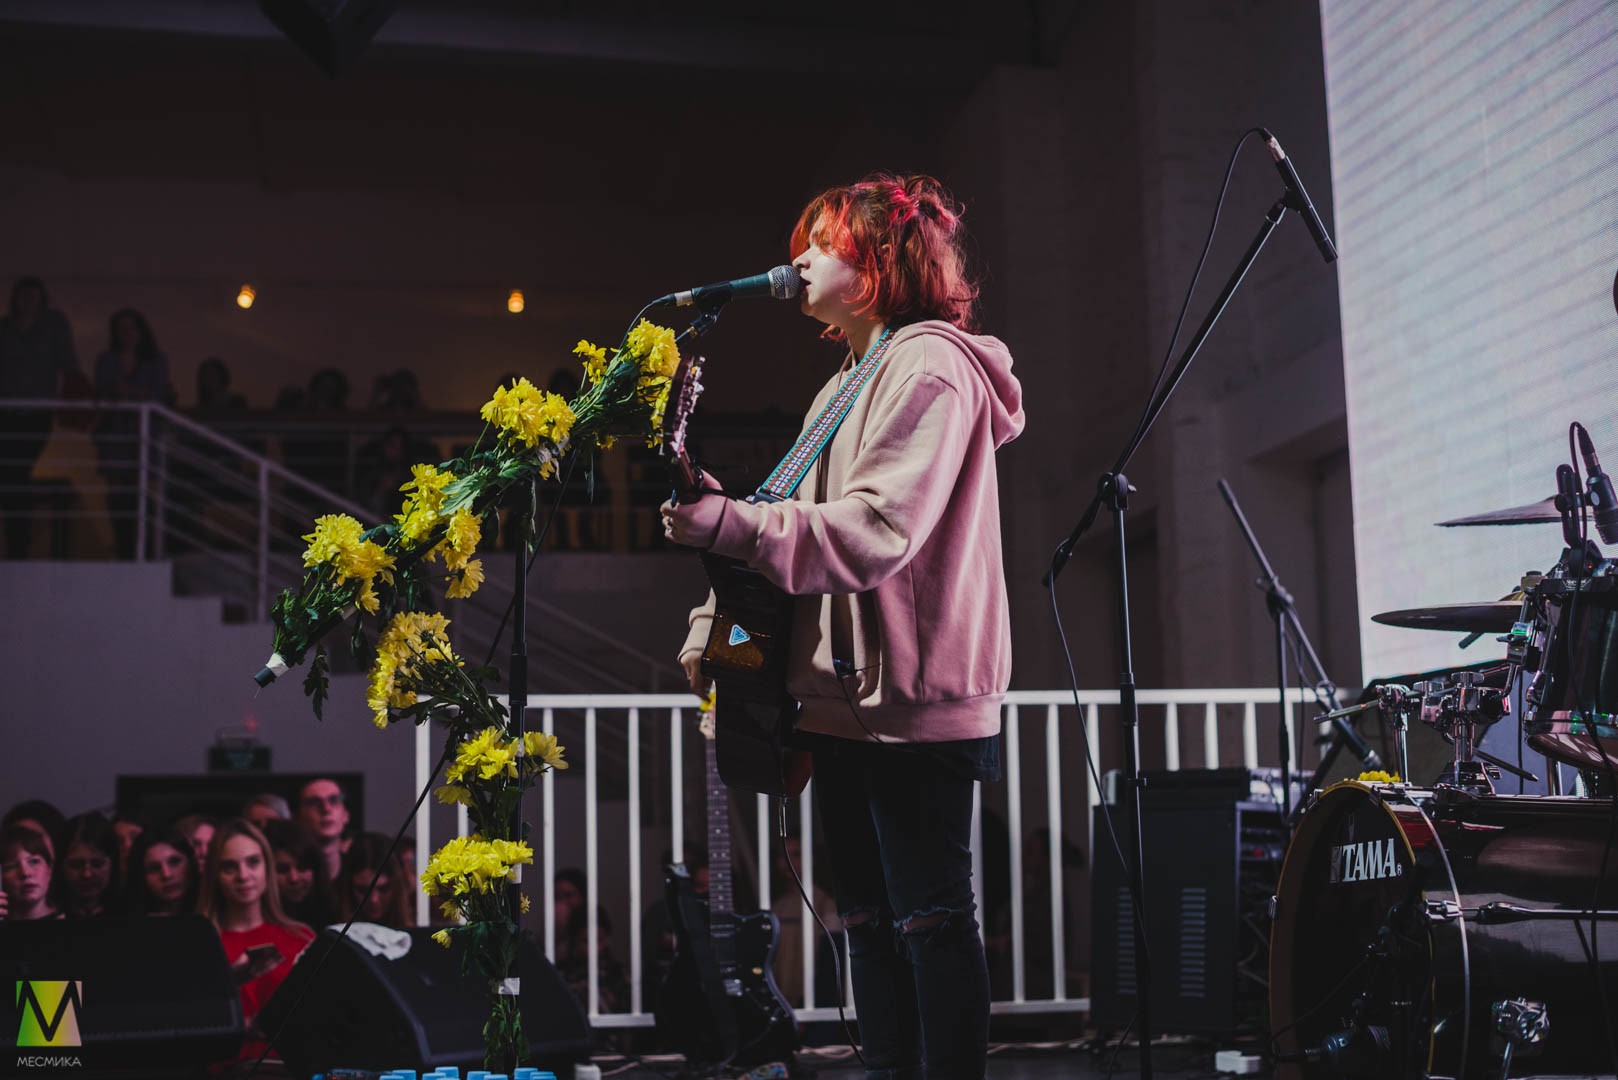 Алёна Швец выступила в Нижнем Новгороде 9 декабря в клубе 